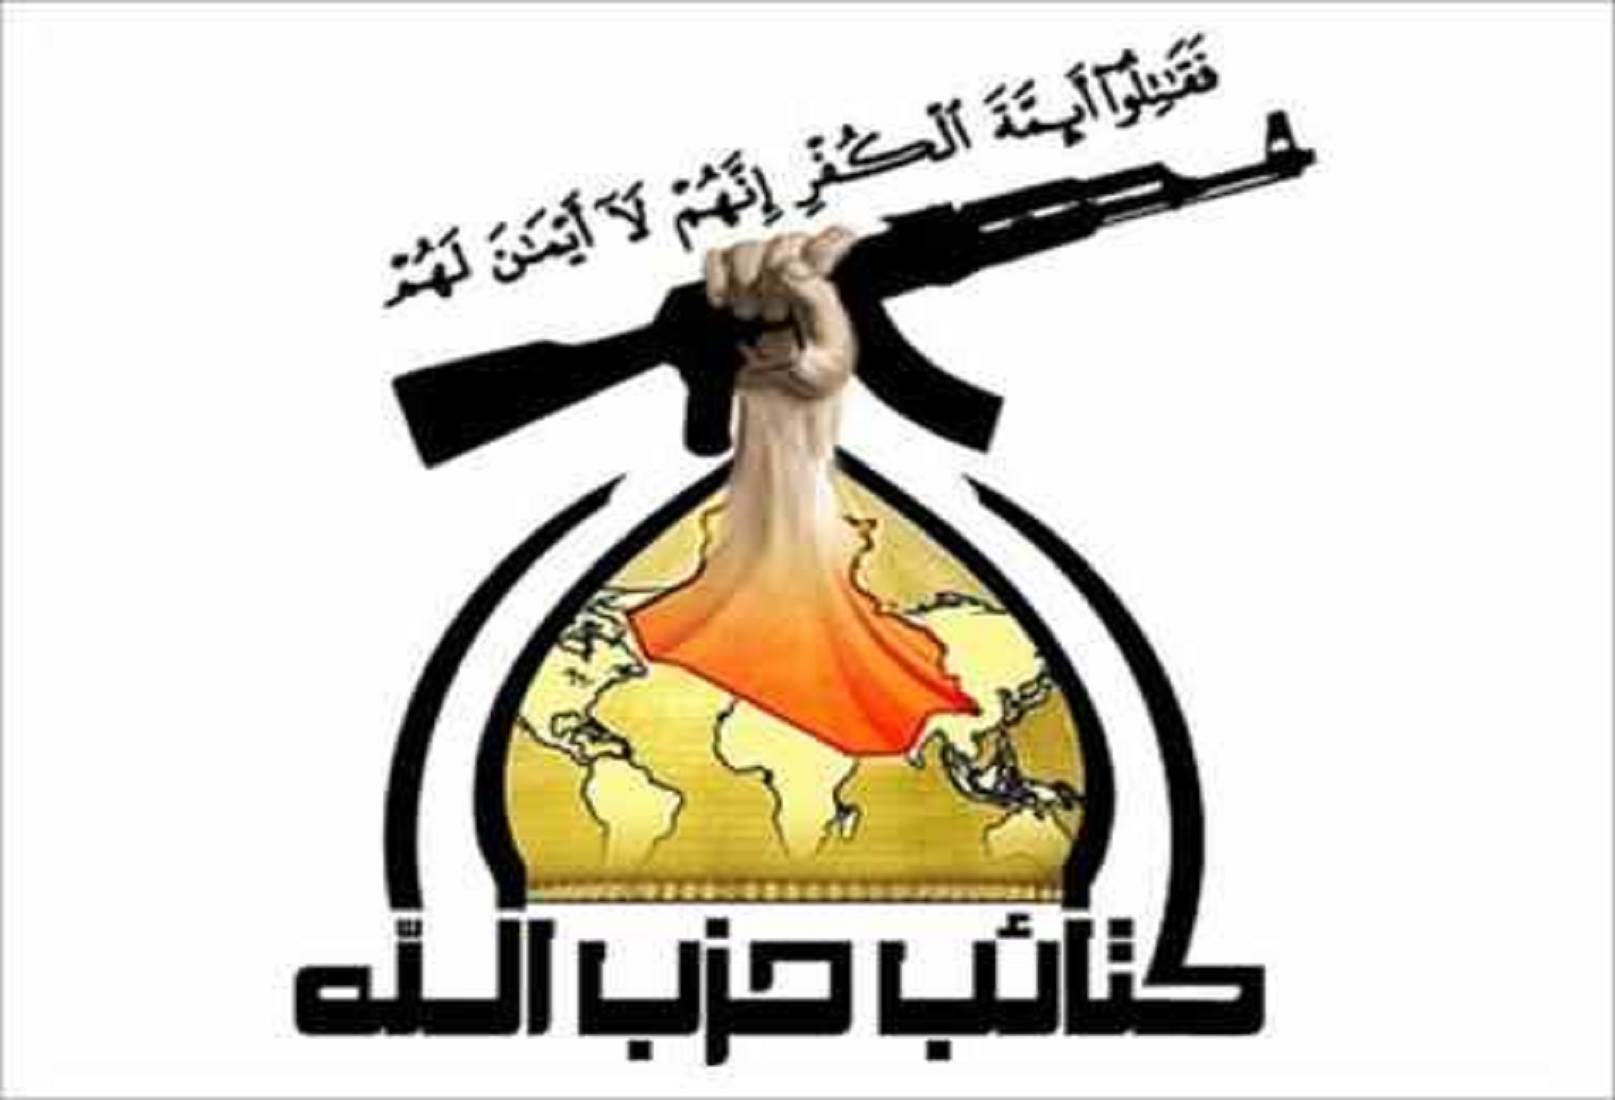 كتائب حزب الله العراق:سنقاتل مع الحوثيين!